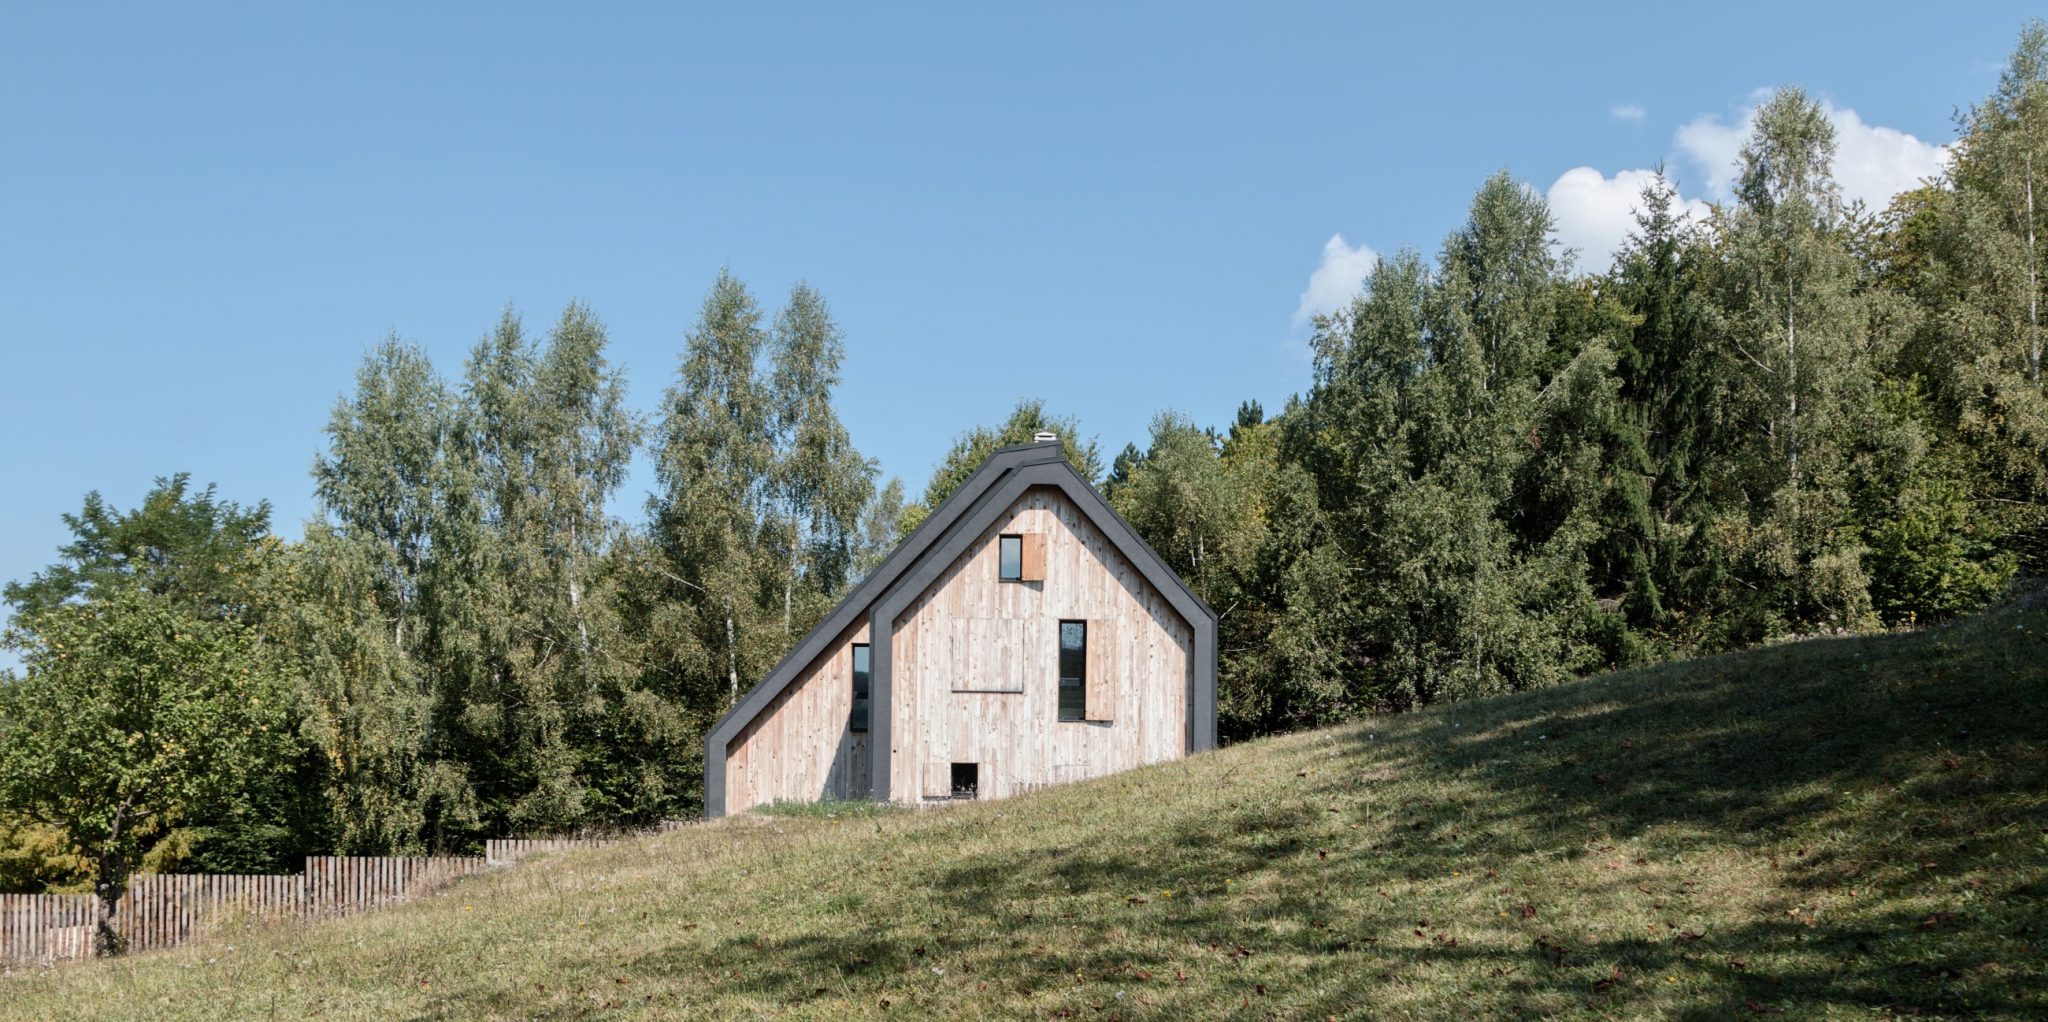 Колашин, Дуловине — современный дом в горах, отмеченный наградами, недалеко от национального парка Биоградска гора